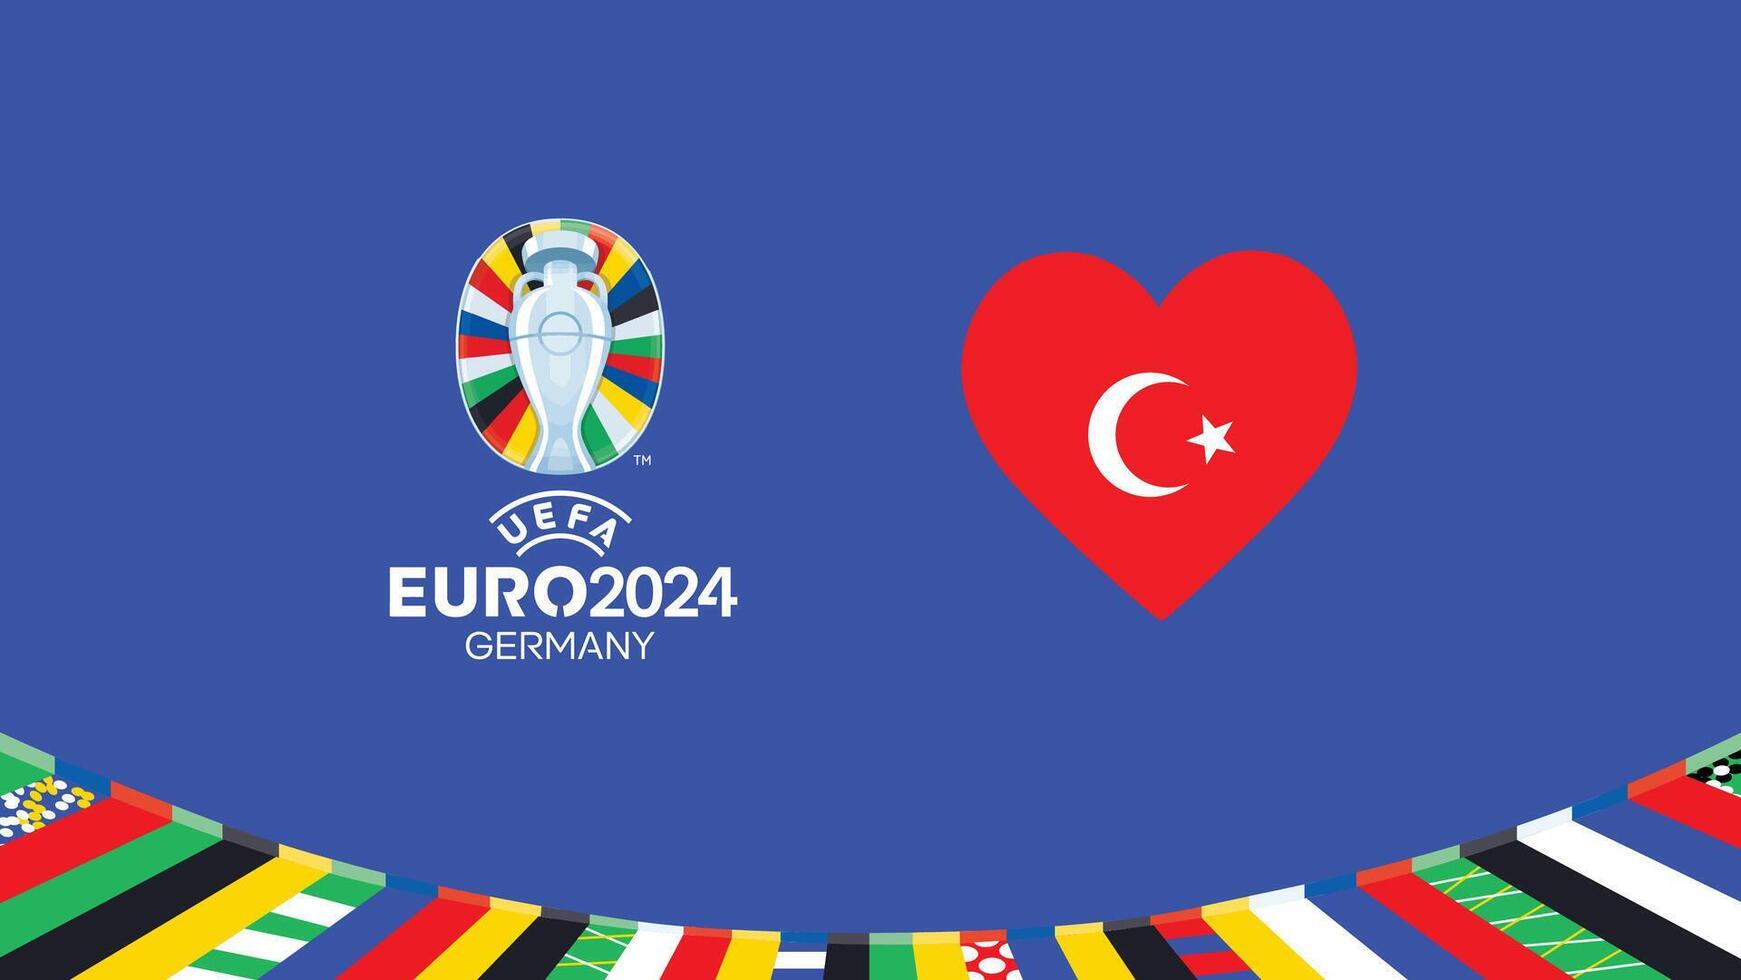 euro 2024 turkiye drapeau cœur équipes conception avec officiel symbole logo abstrait des pays européen Football illustration vecteur